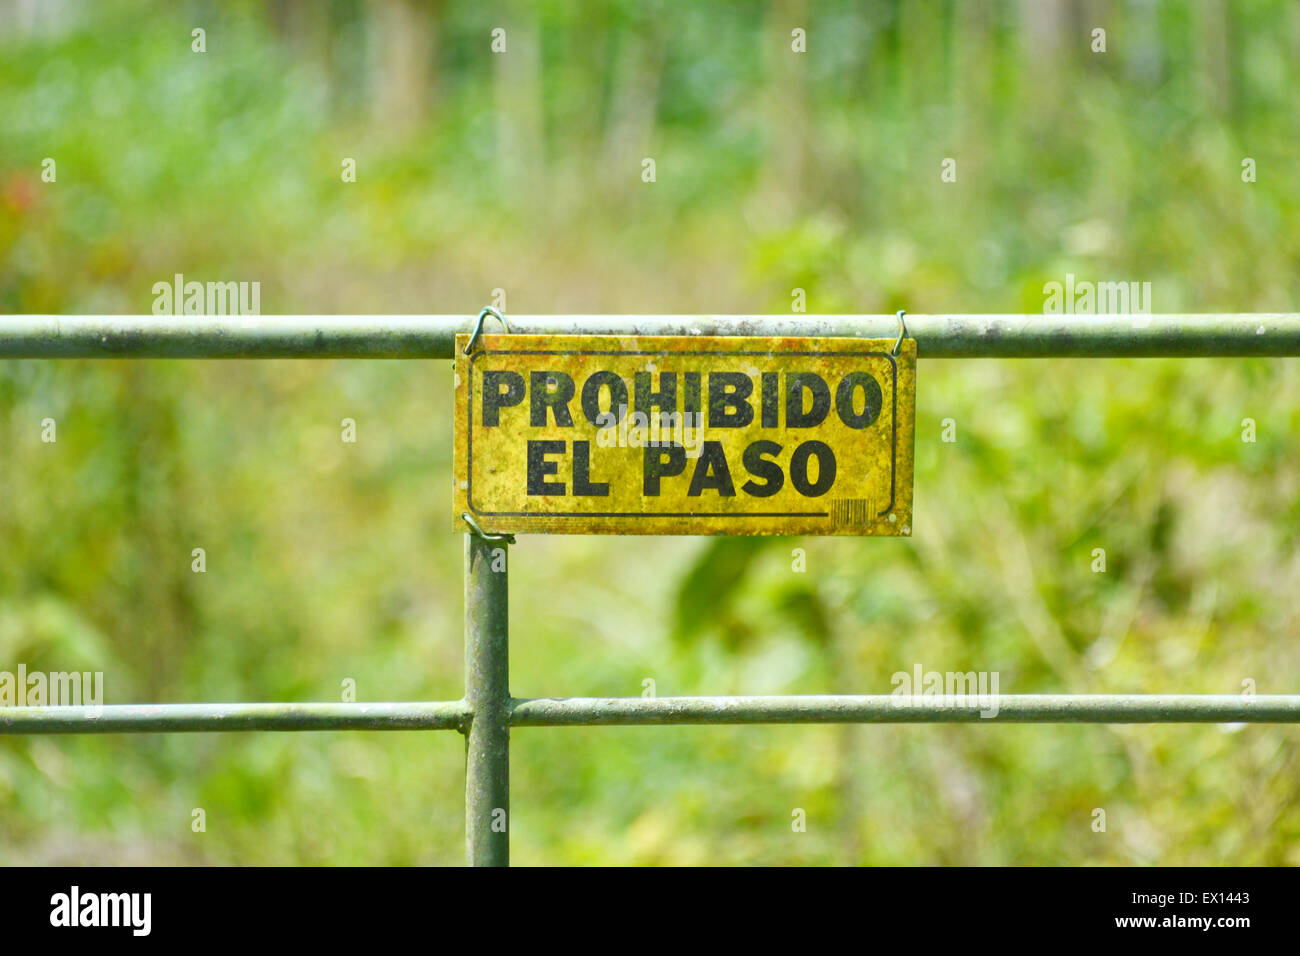 No trespassing sign on a metal door written in spanish Stock Photo